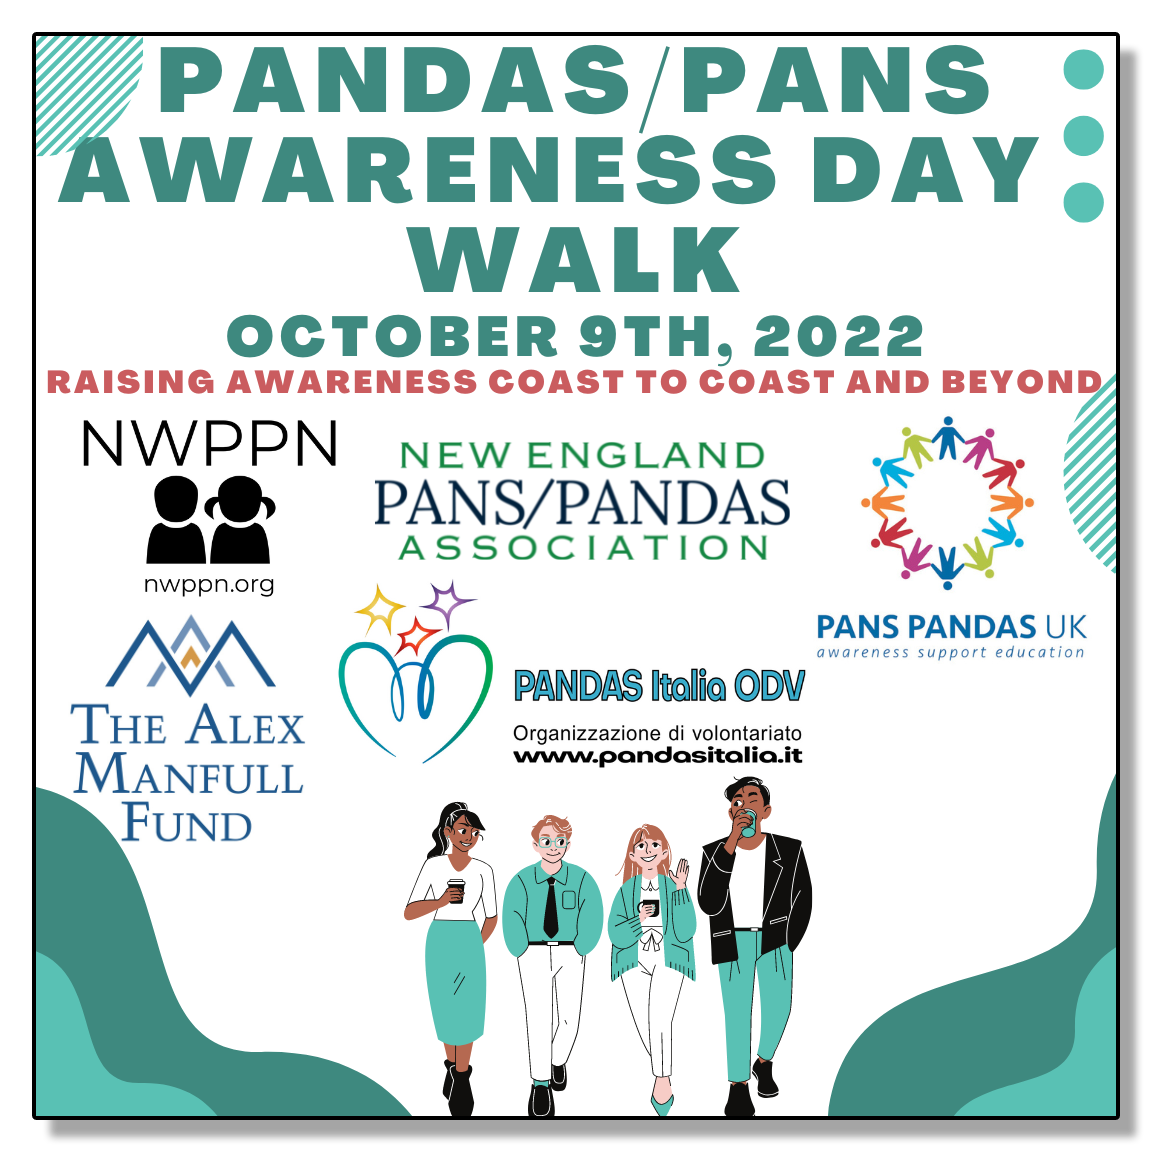 PANDAS / PANS AWARENESS DAY WALK